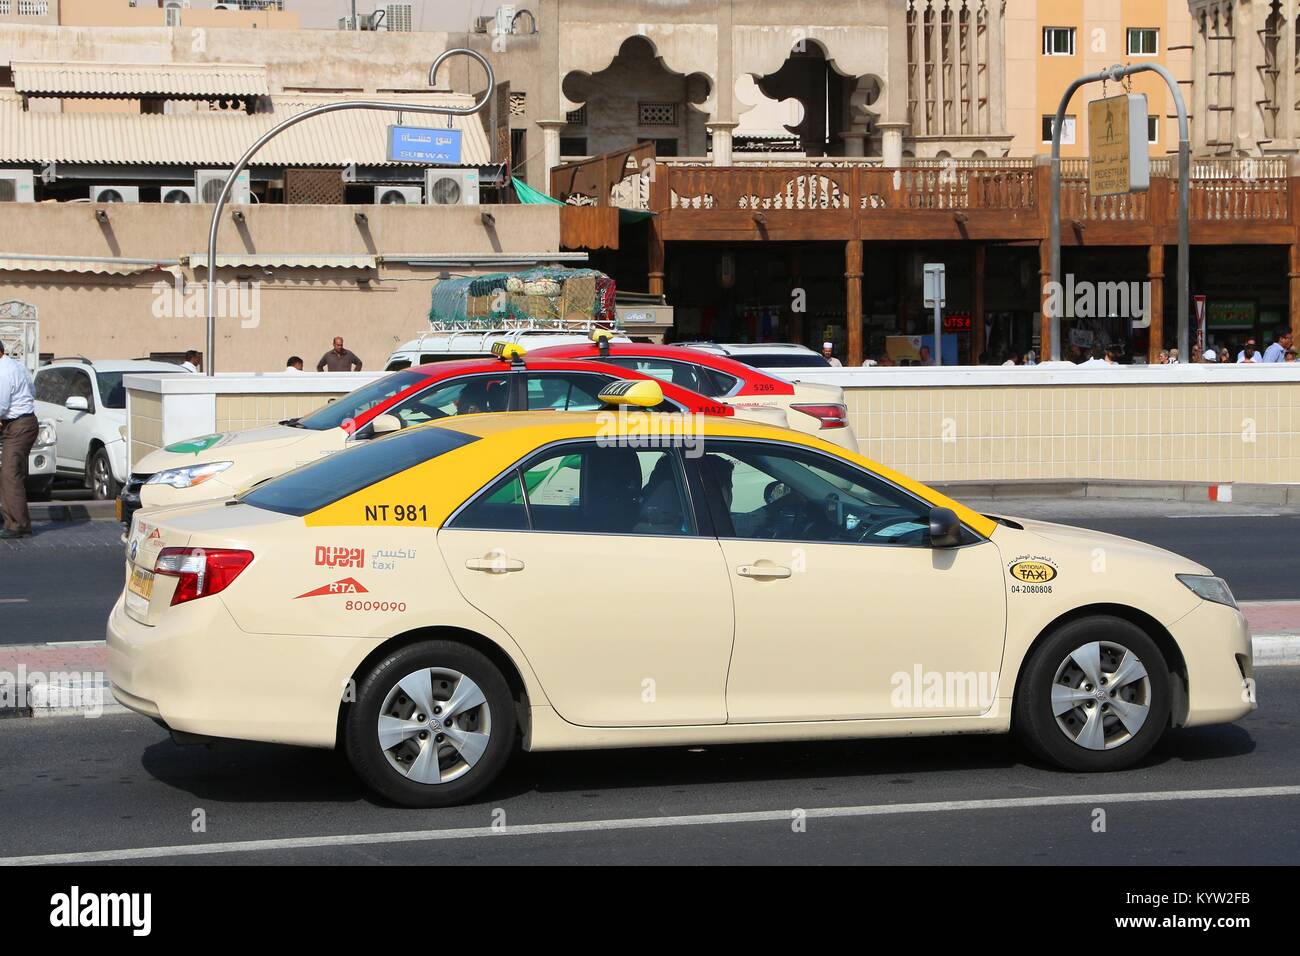 DUBAI, VAE - Dezember 10, 2017: Toyota Camry Taxi in Dubai, VAE. Dubai ist die bevölkerungsreichste Stadt in den VEREINIGTEN ARABISCHEN EMIRATEN und einer der wichtigsten globalen Stadt. Stockfoto